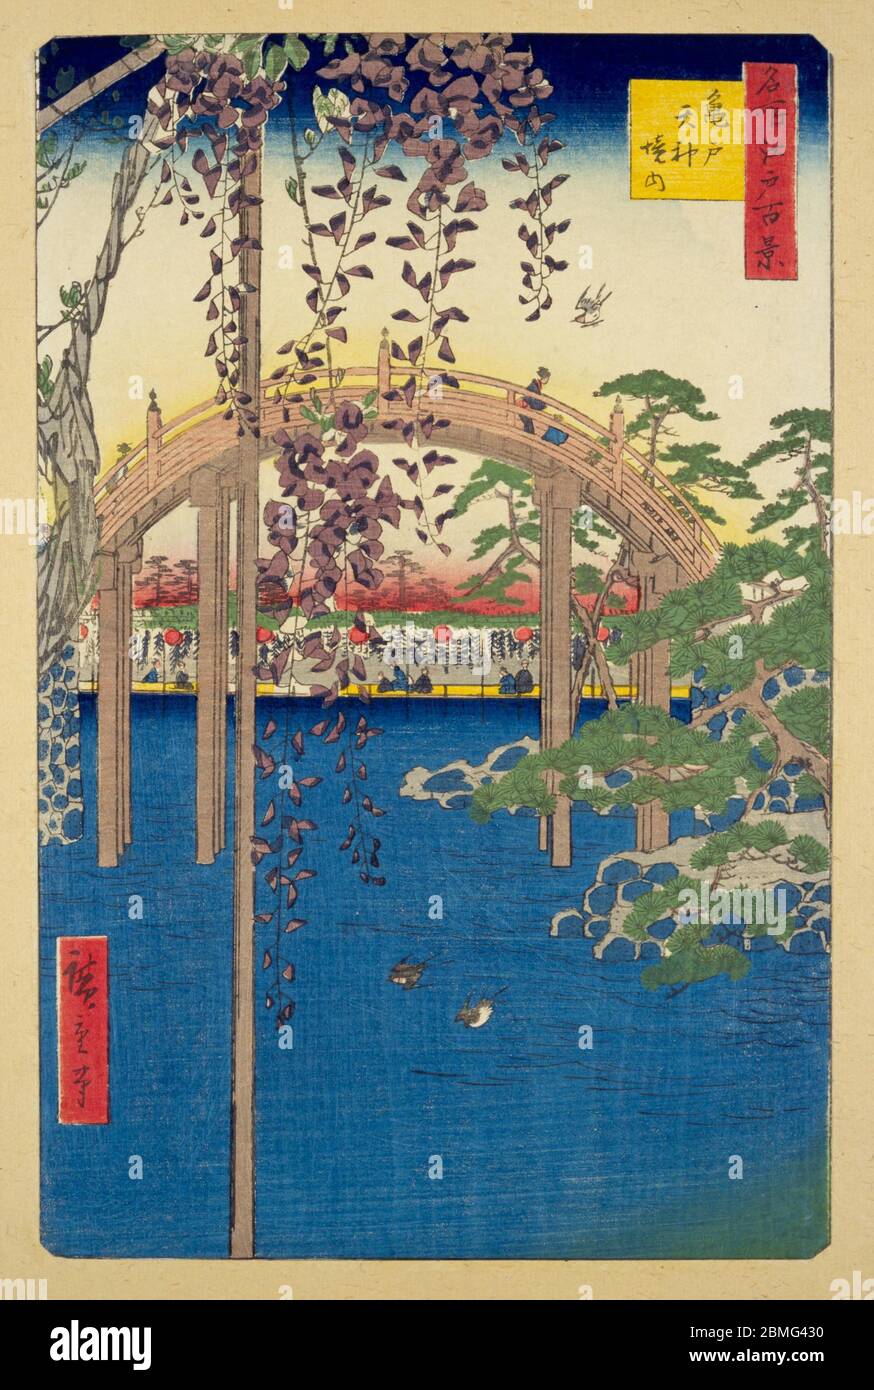 [ 1850er Japan - Kameido Tenjin ] - Shinji Teich, Glyzinienblüte und eine traditionelle Bogenbrücke am Kameido Tenjin Schrein in Edo (heute Tokio), 1856 (Ansei 3). Dieser Holzschnitt ist Bild 65 in hundert berühmten Ansichten von Edo (名所江戸百景, Meisho Edo Hyakkei), einer Serie von Ukiyoe Künstler Utagawa Hiroshige (歌川広重, 1797–1858) erstellt. Es ist eine von 30 Sommerszenen der Serie. Titel: Inside Kameido Tenjin Shrine (亀戸天神境内, Kameido Tenjin keidai) Vintage Ukiyoe Holzschnitt aus dem 19. Jahrhundert. Stockfoto